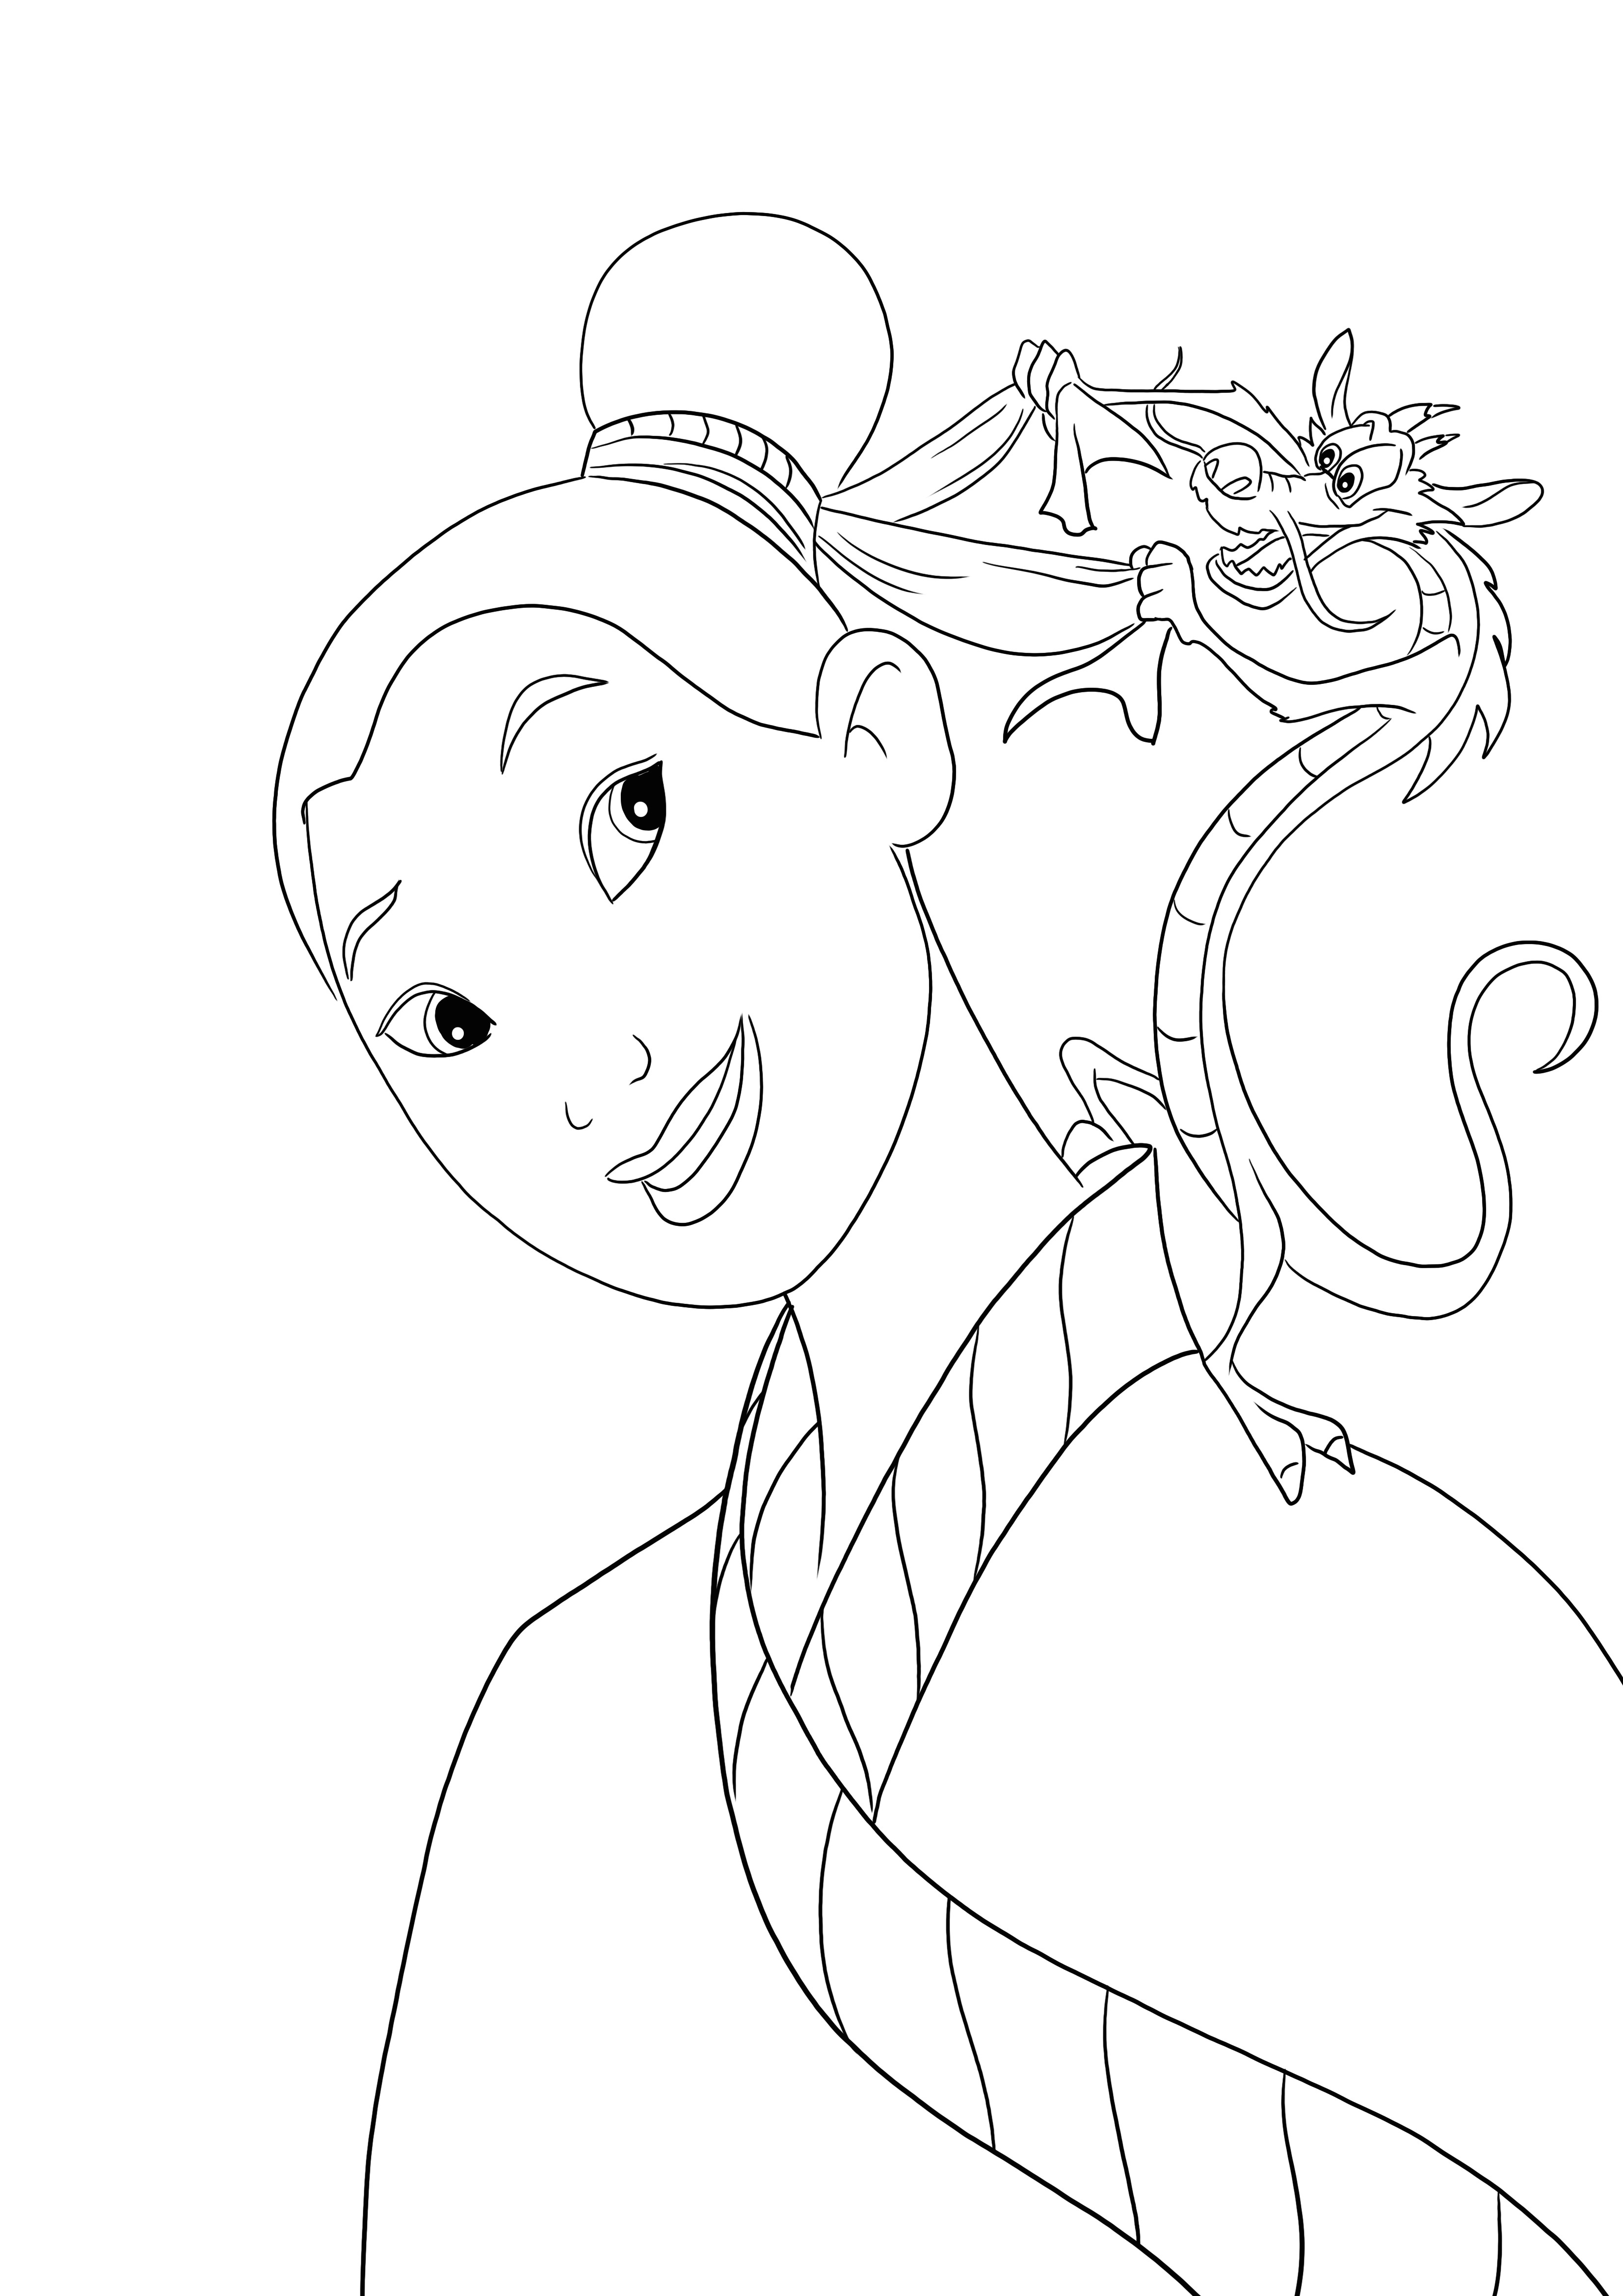 Coloração engraçada de Mushu fazendo cabelo de Mulan grátis para baixar e colorir